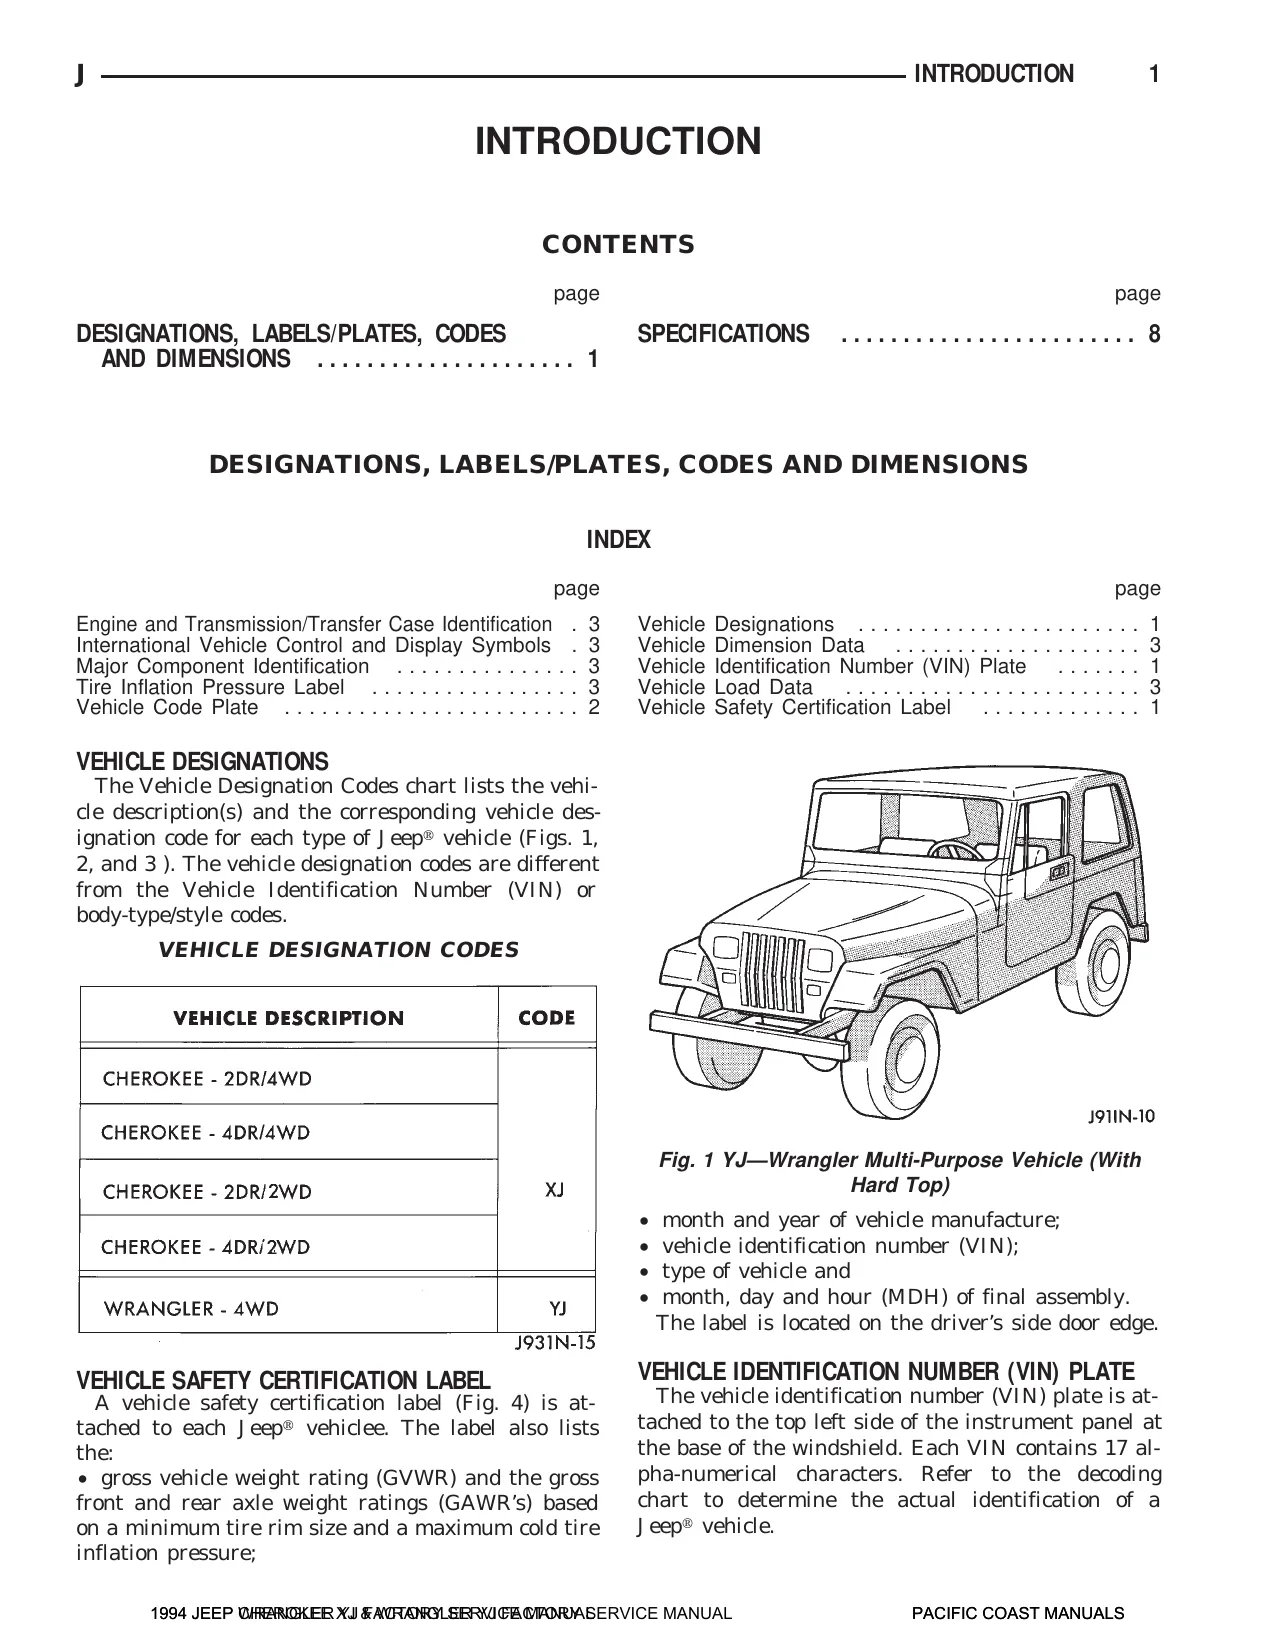 1994 Jeep Wrangler YJ repair manual Preview image 4